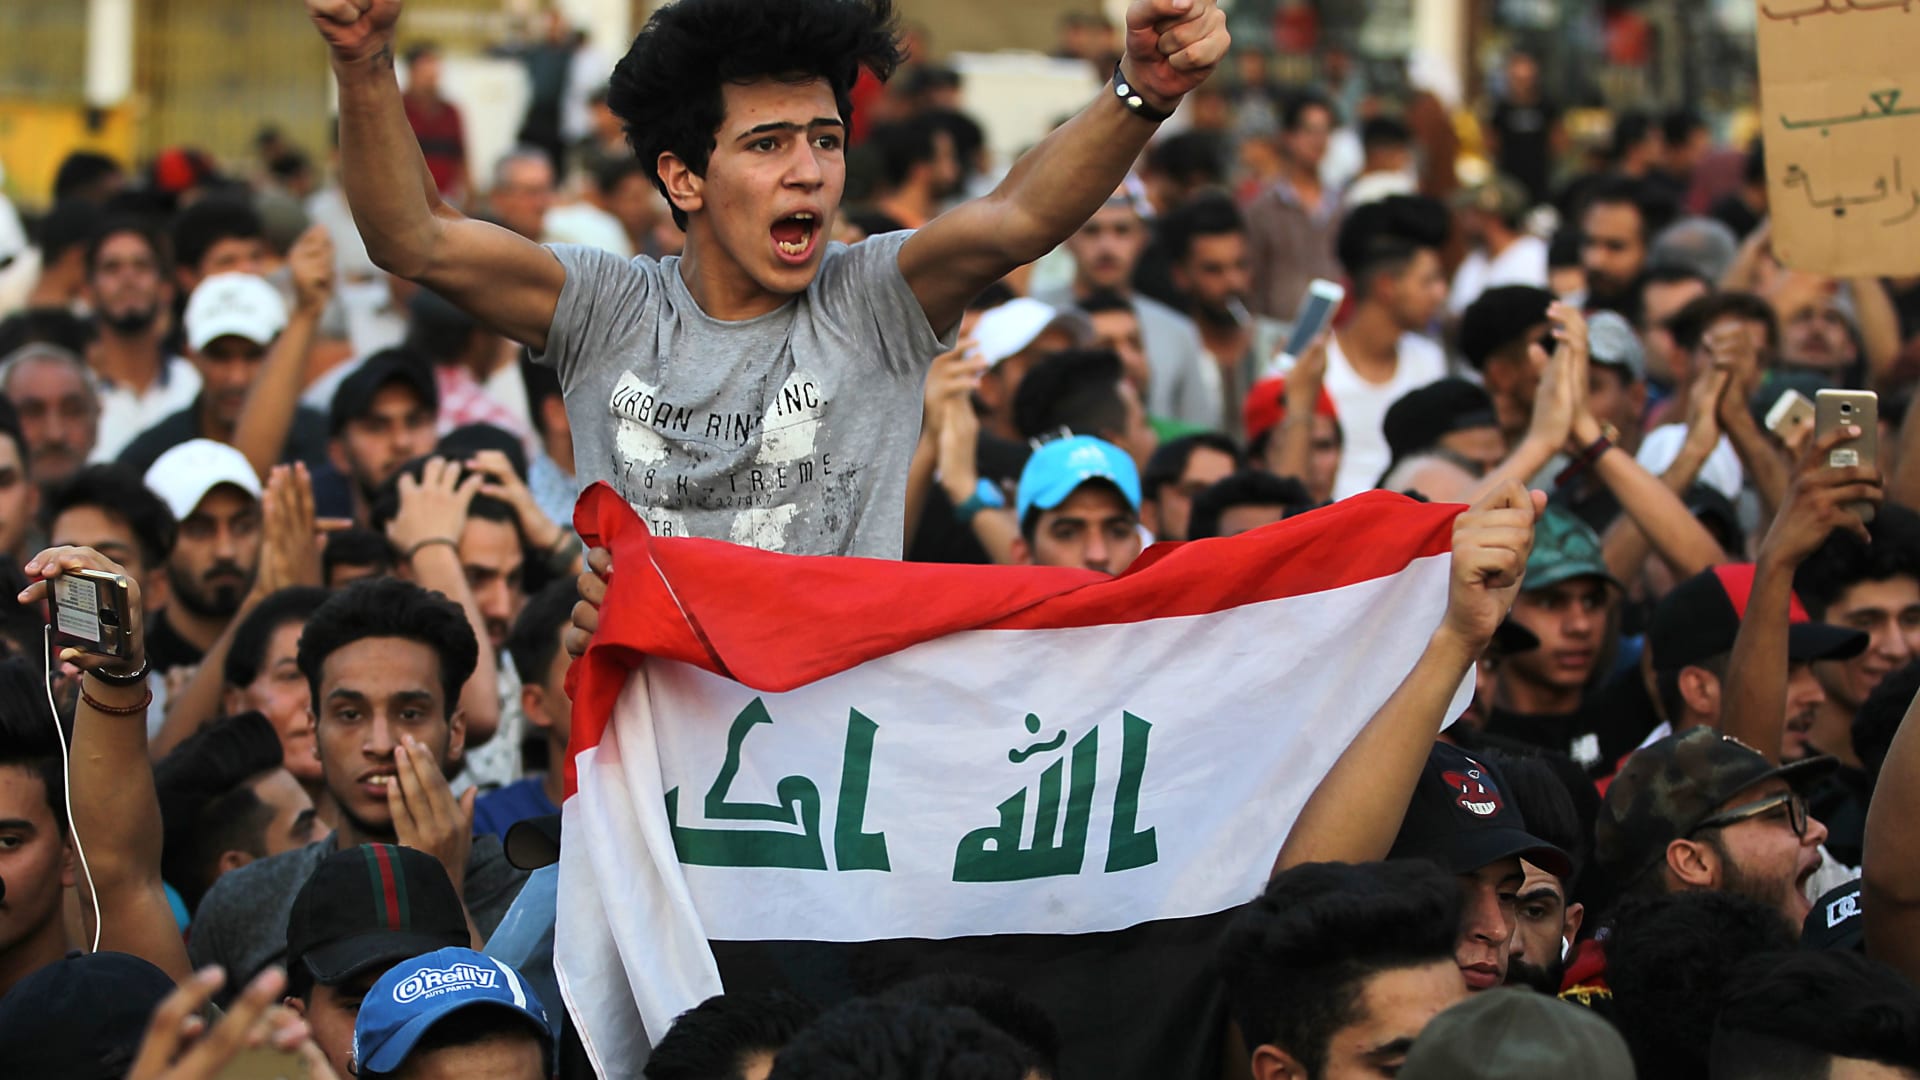 مظاهرات العراق تخطت حدود الطائفية بغضب شعبي ضد الفساد